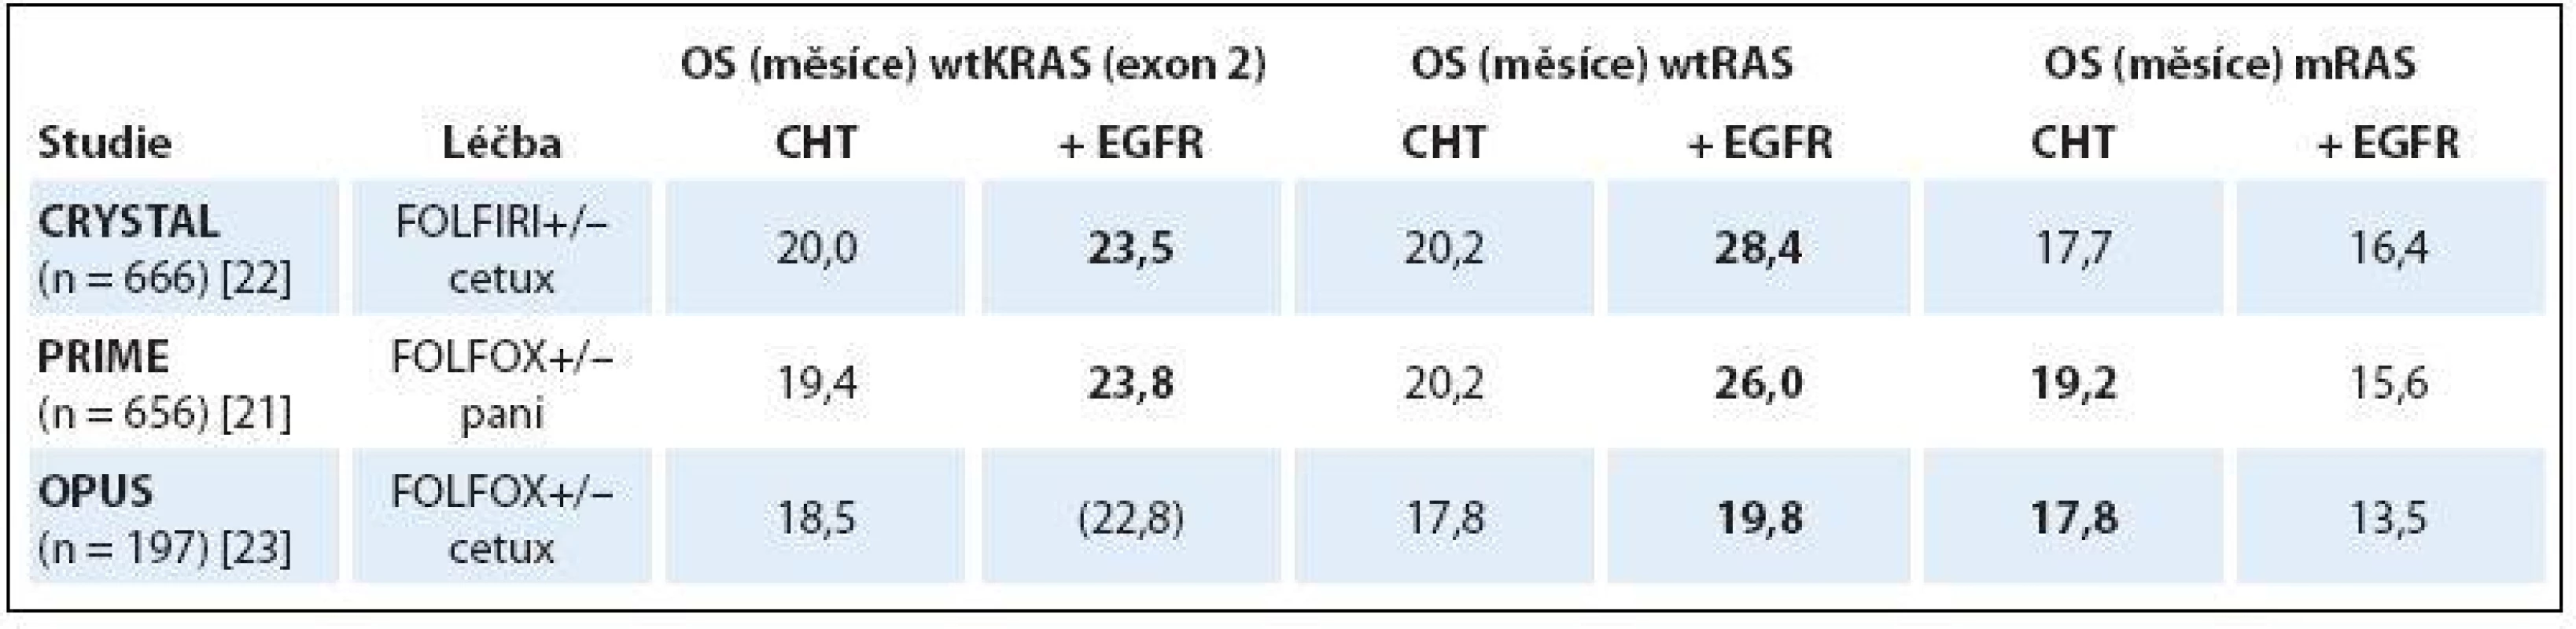 Porovnání OS u wtKRAS, wtRAS a mRAS pacientů v 1. linii anti-EGFR léčby mCRC.